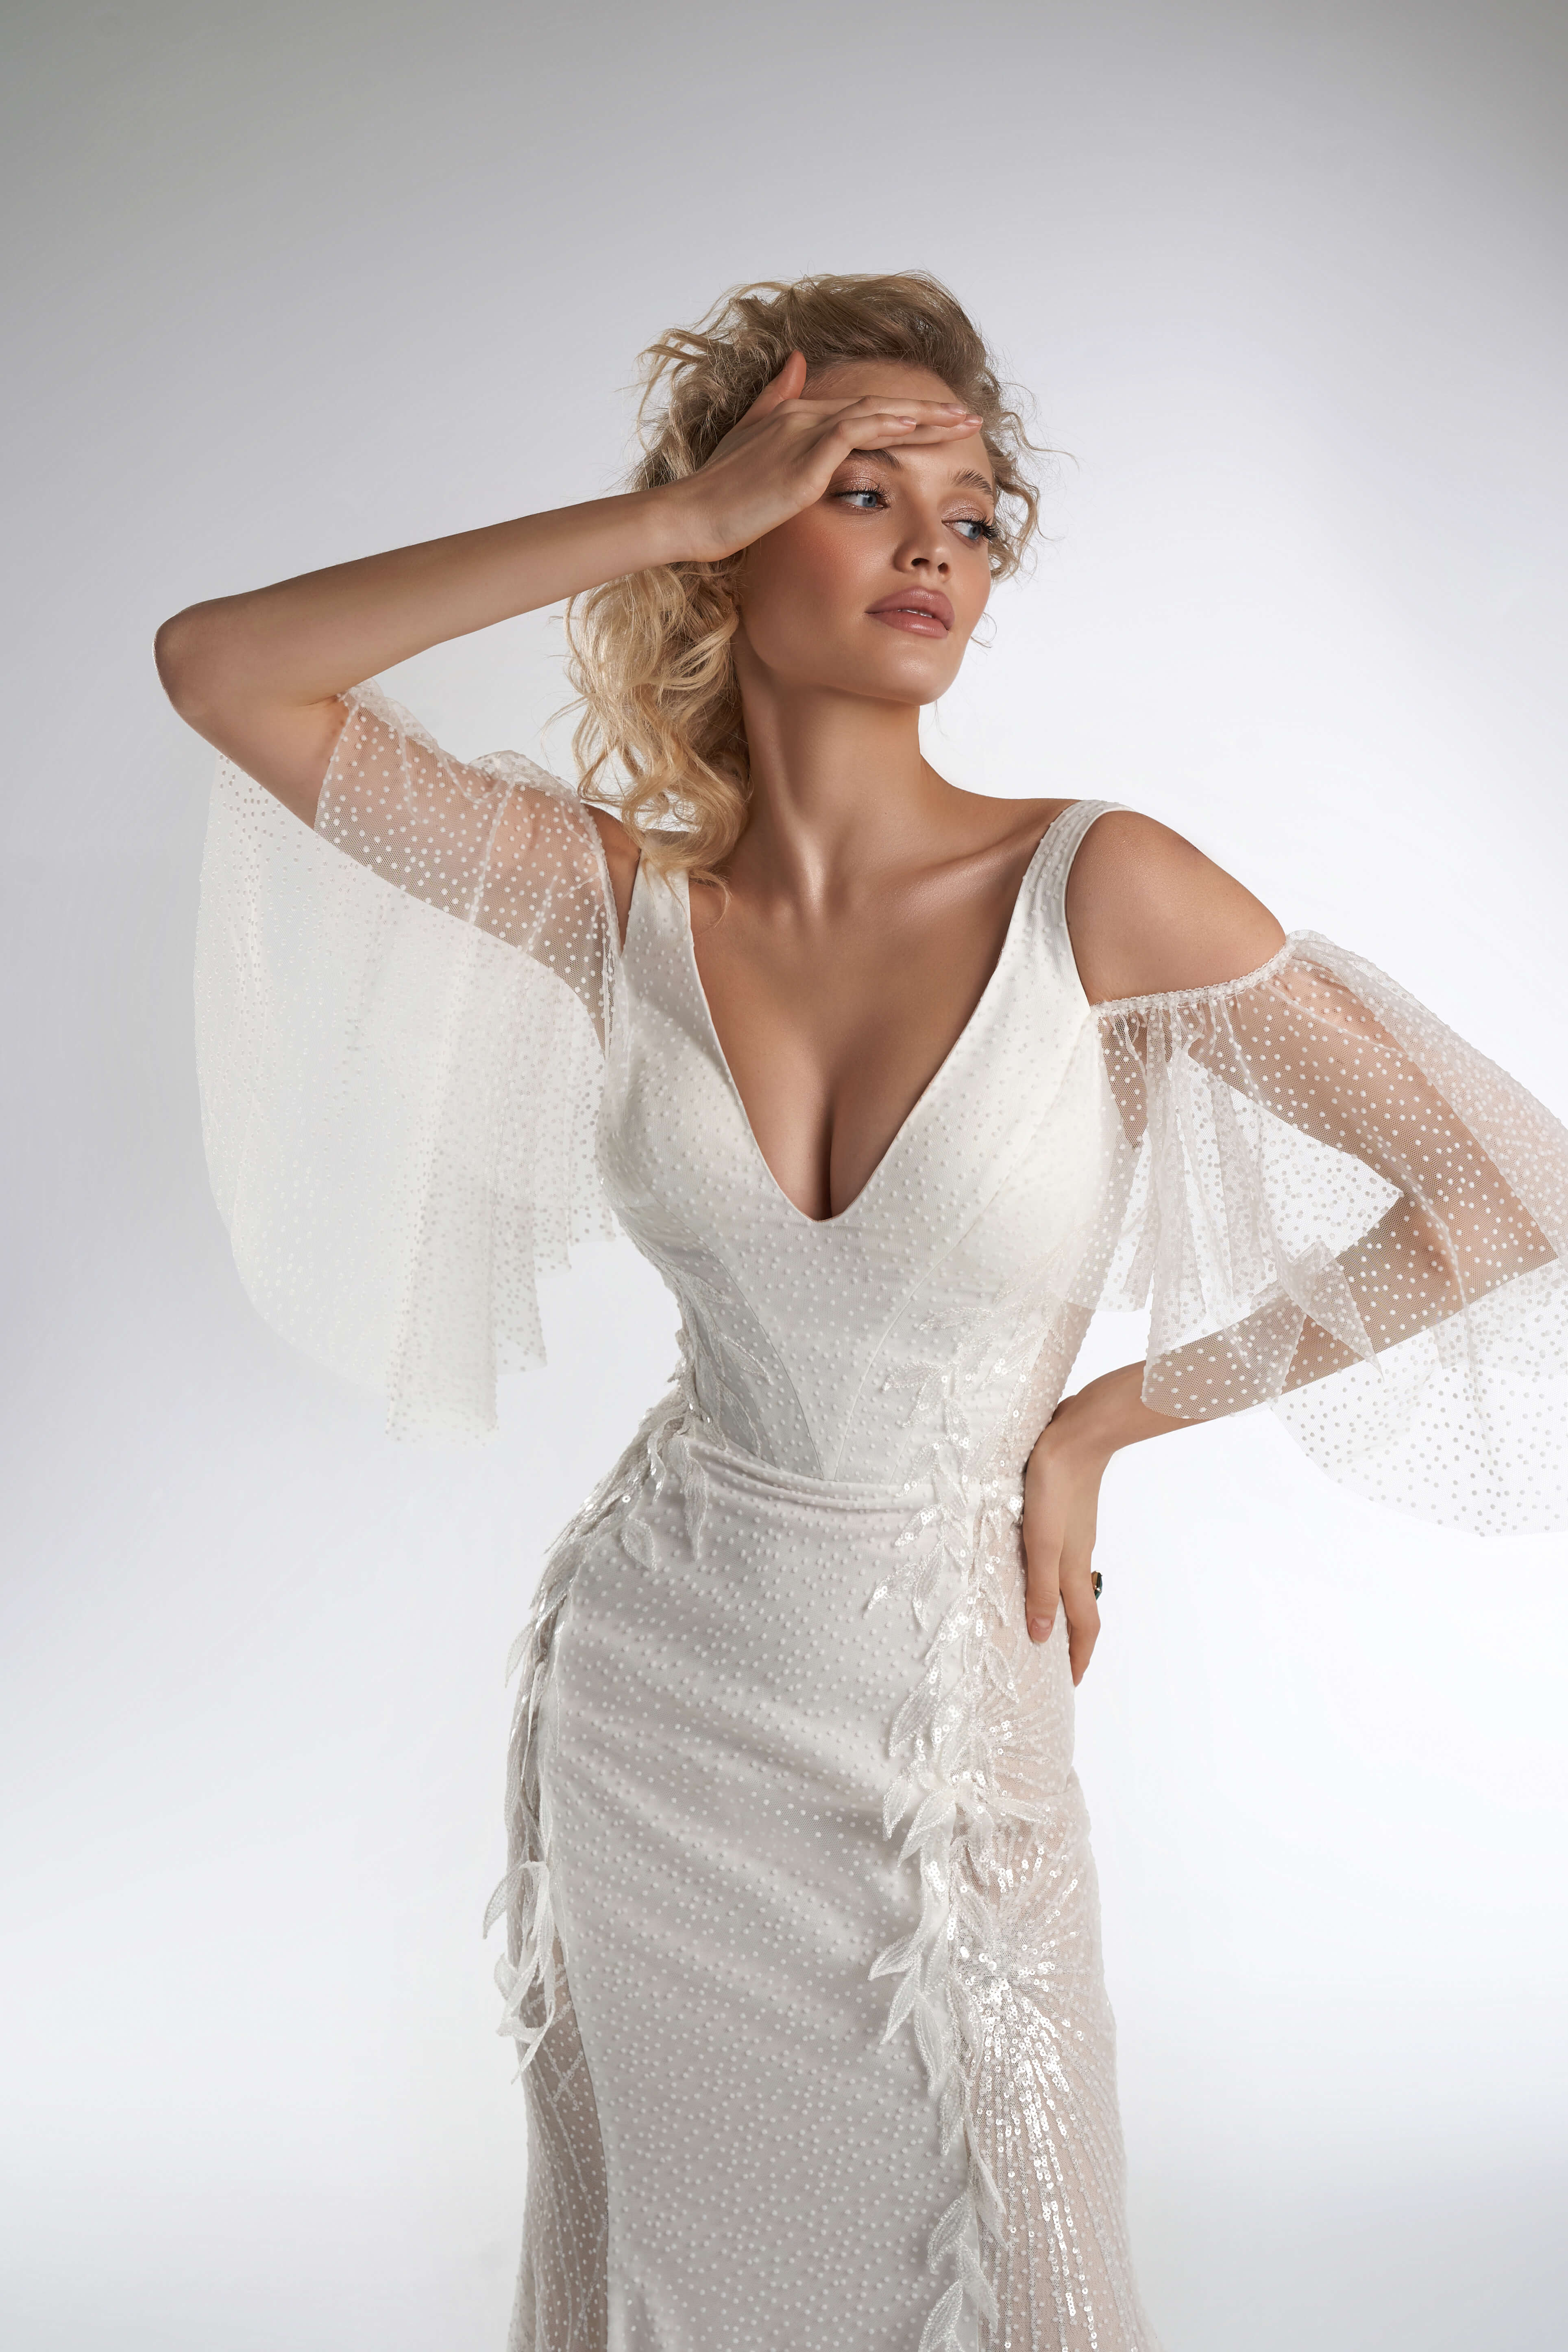 Купить свадебное платье «Истон» Рара Авис из коллекции Пьюр 2022 года в салоне «Мэри Трюфель»